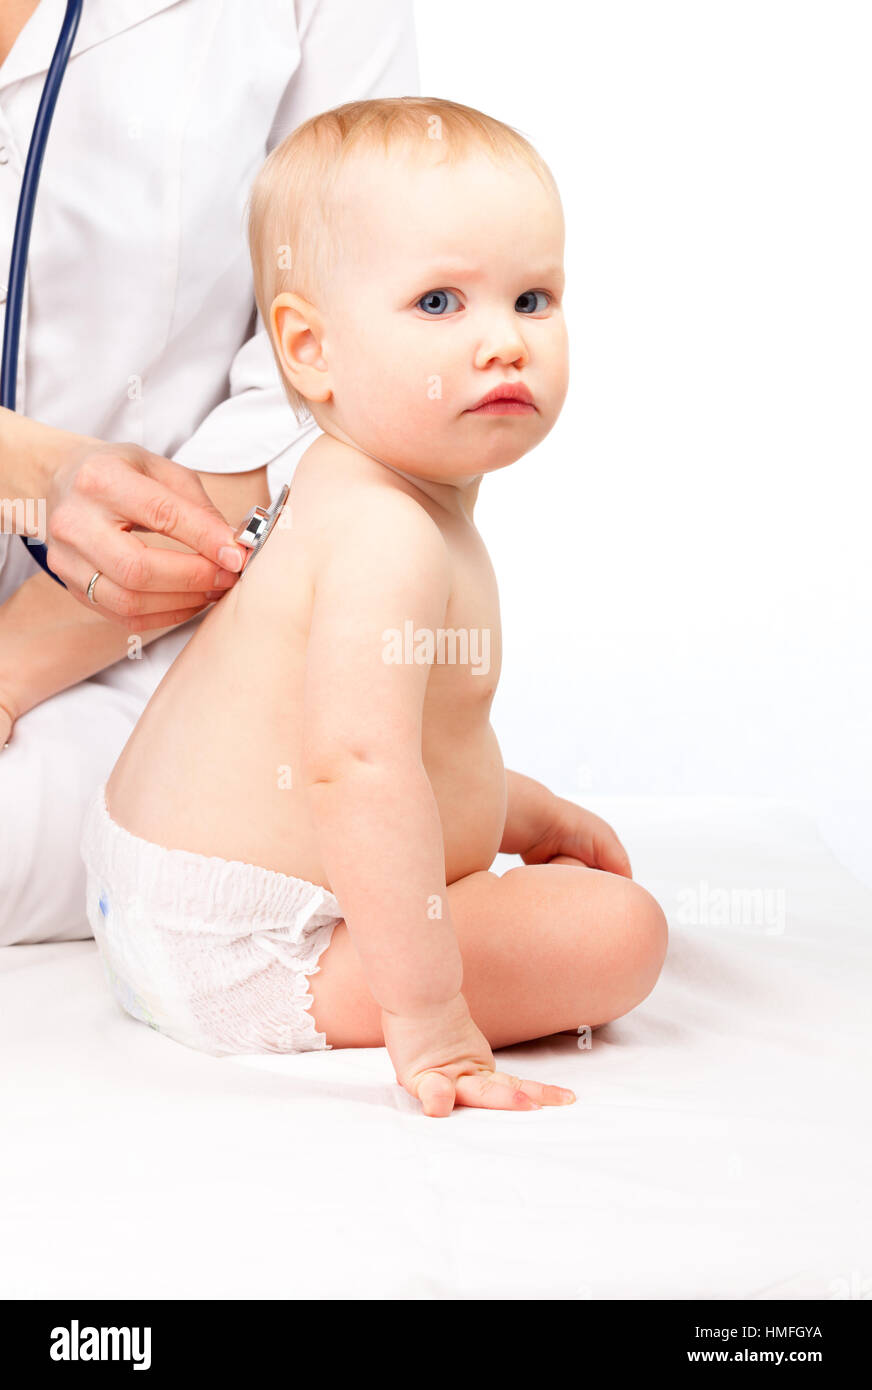 Kinderarzt untersucht kleines Mädchen mit einem Stethoskop Baby die Brust  Überprüfung Herzschlag hören Stockfotografie - Alamy